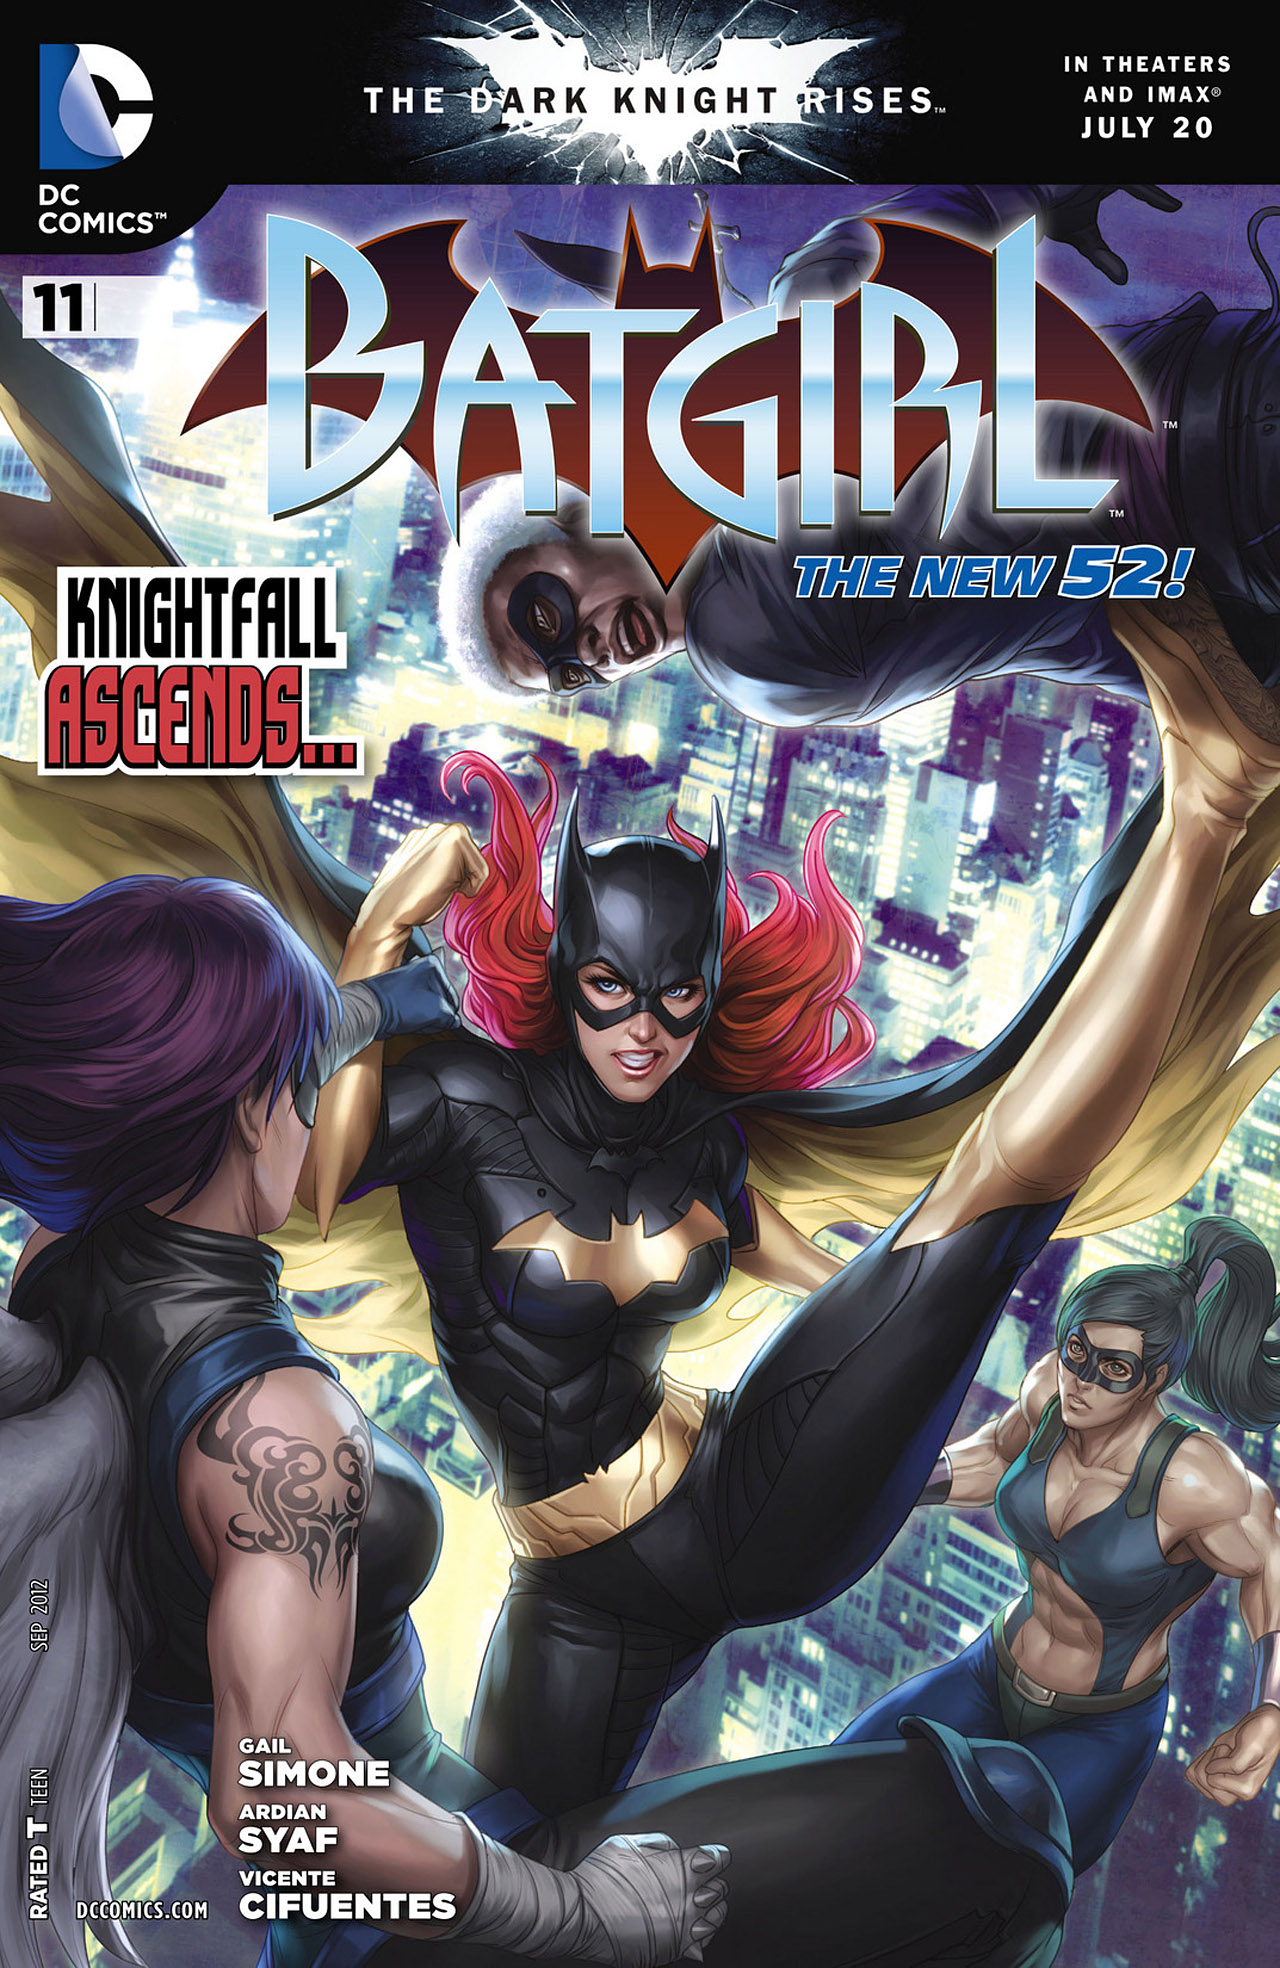 Batgirl Vol. 4 #11